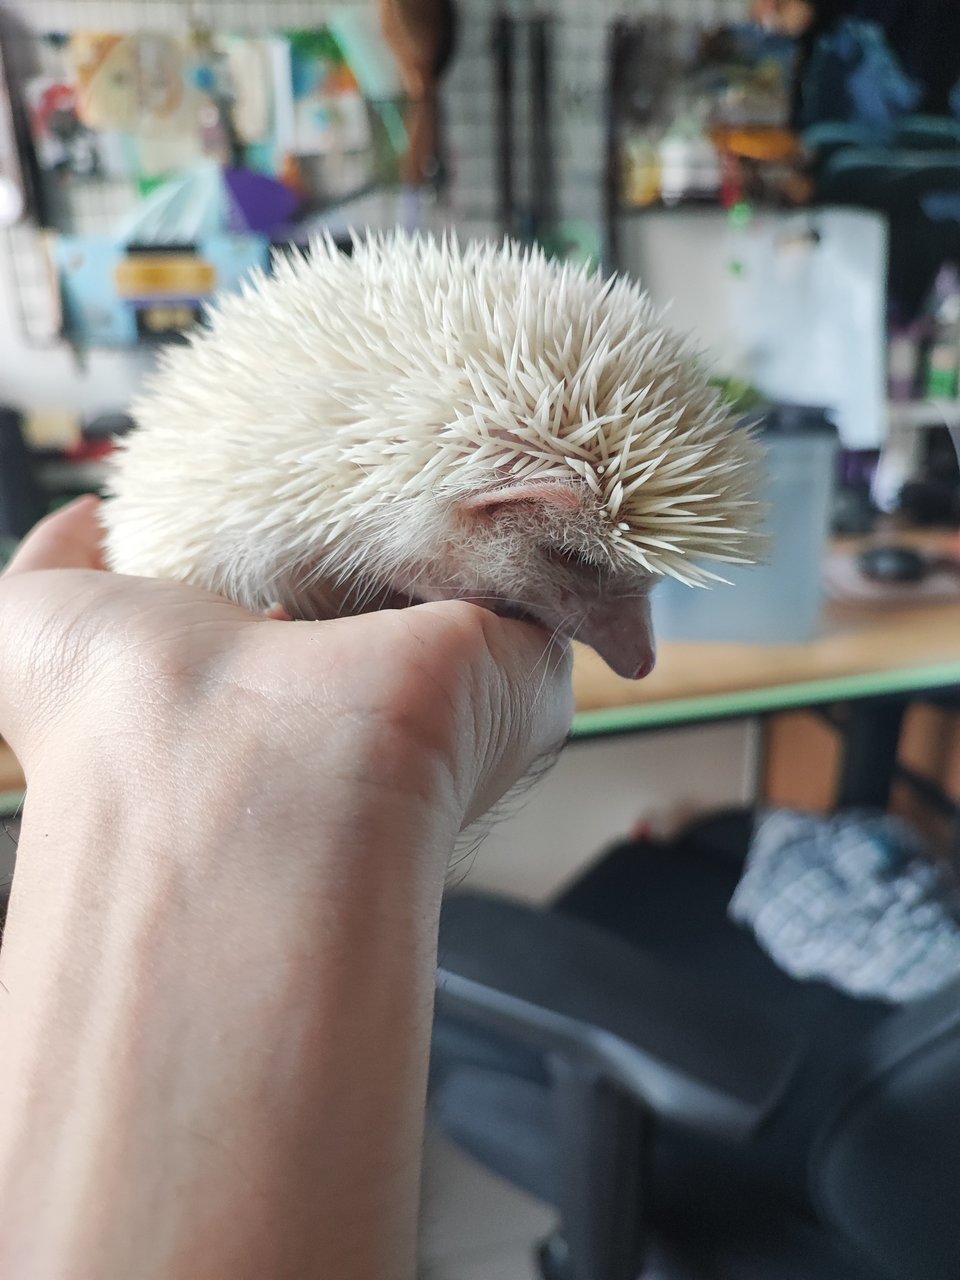 Dango - Hedgehog Small & Furry